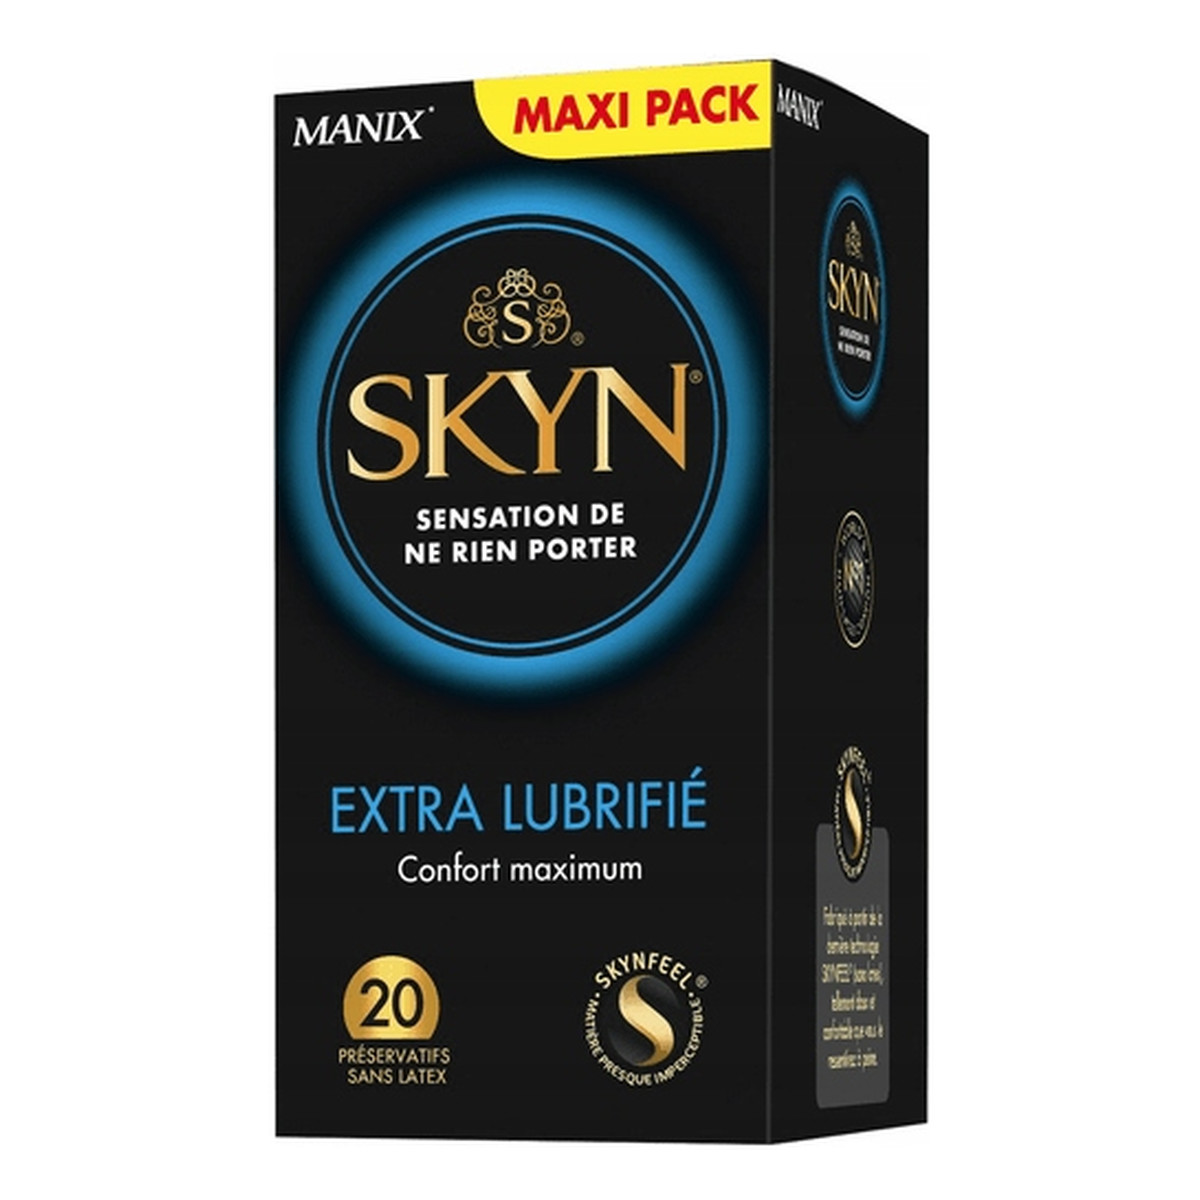 Unimil Skyn extra lubrifie nielateksowe prezerwatywy 20szt